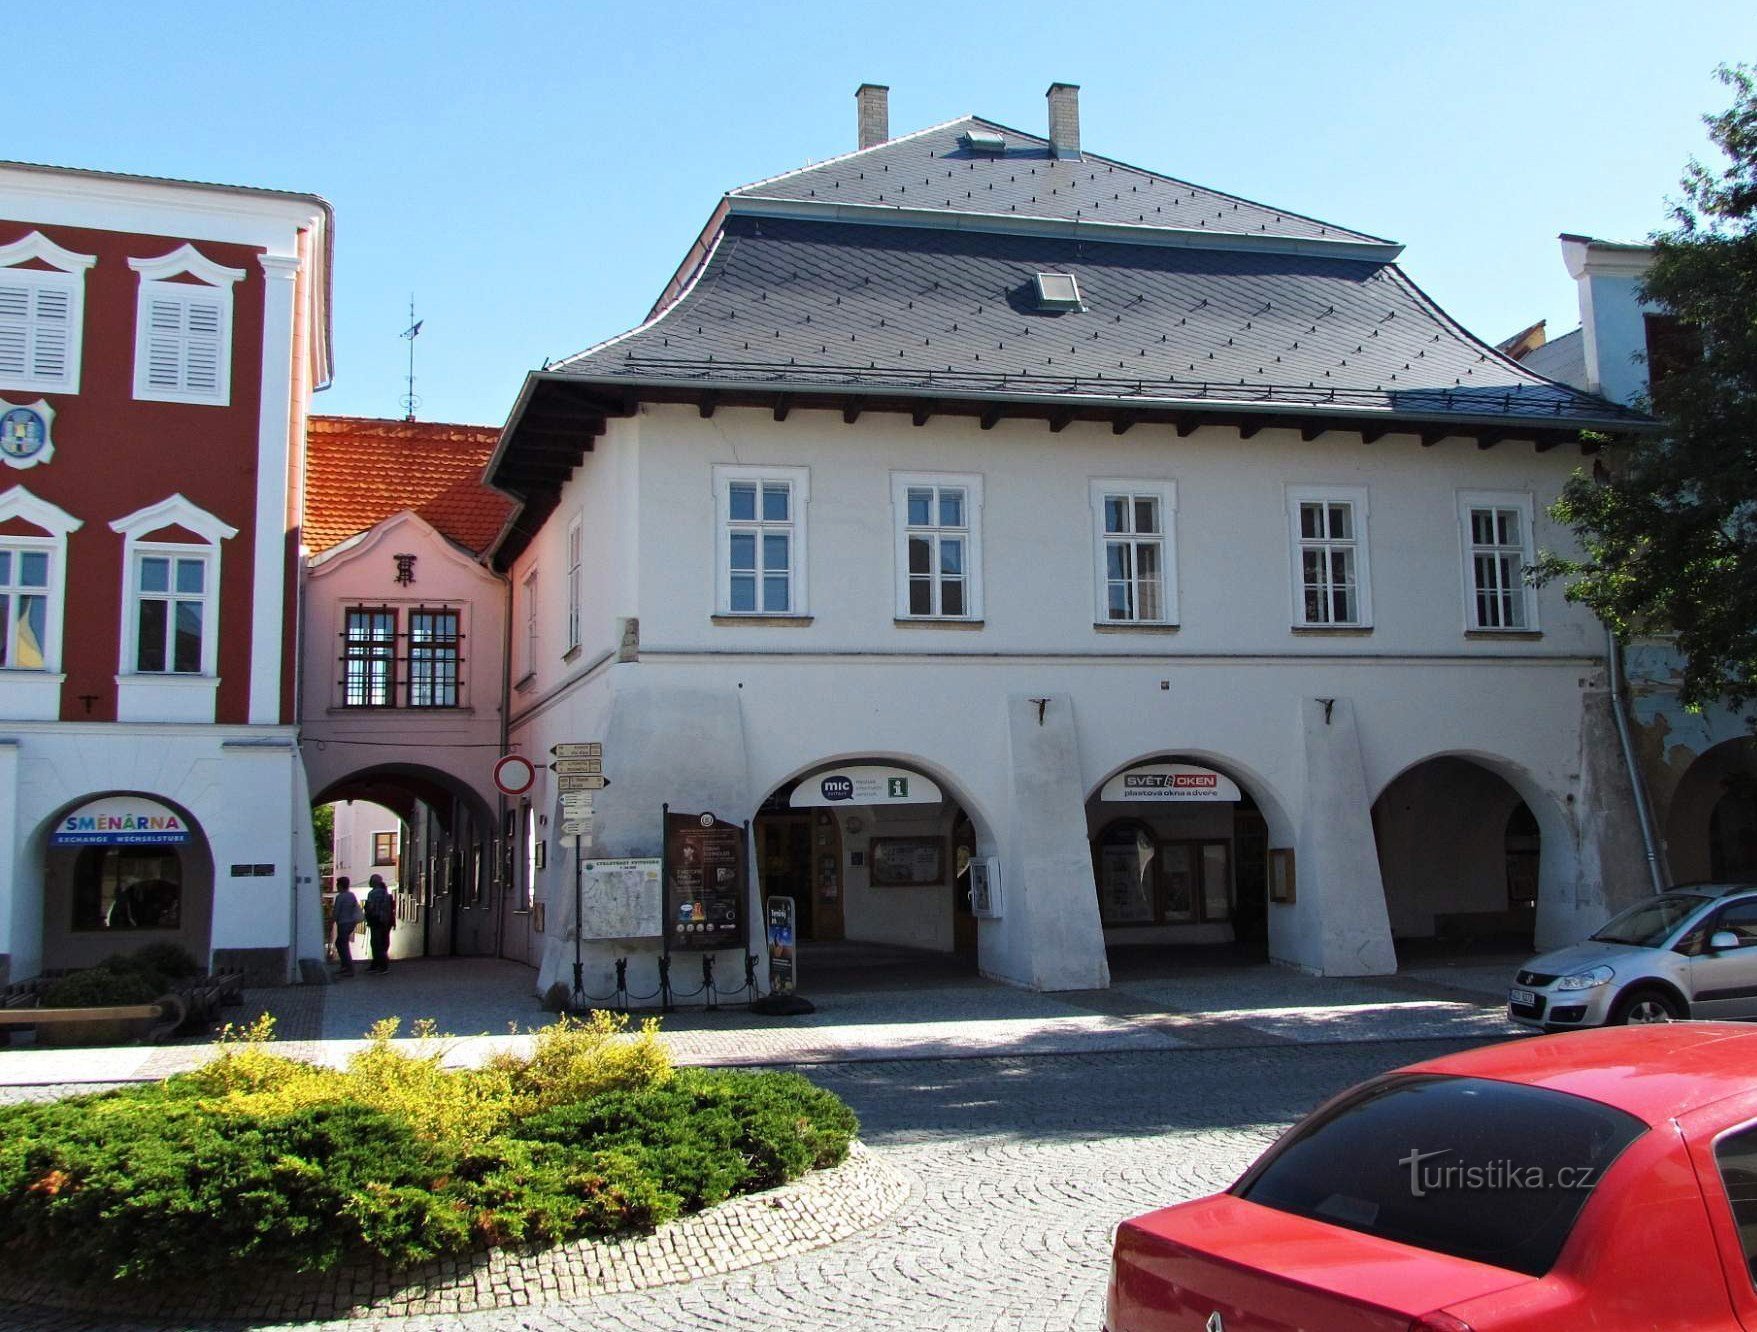 Tòa thị chính cổ và ngôi nhà U Mouřenina trên quảng trường ở Svitavy